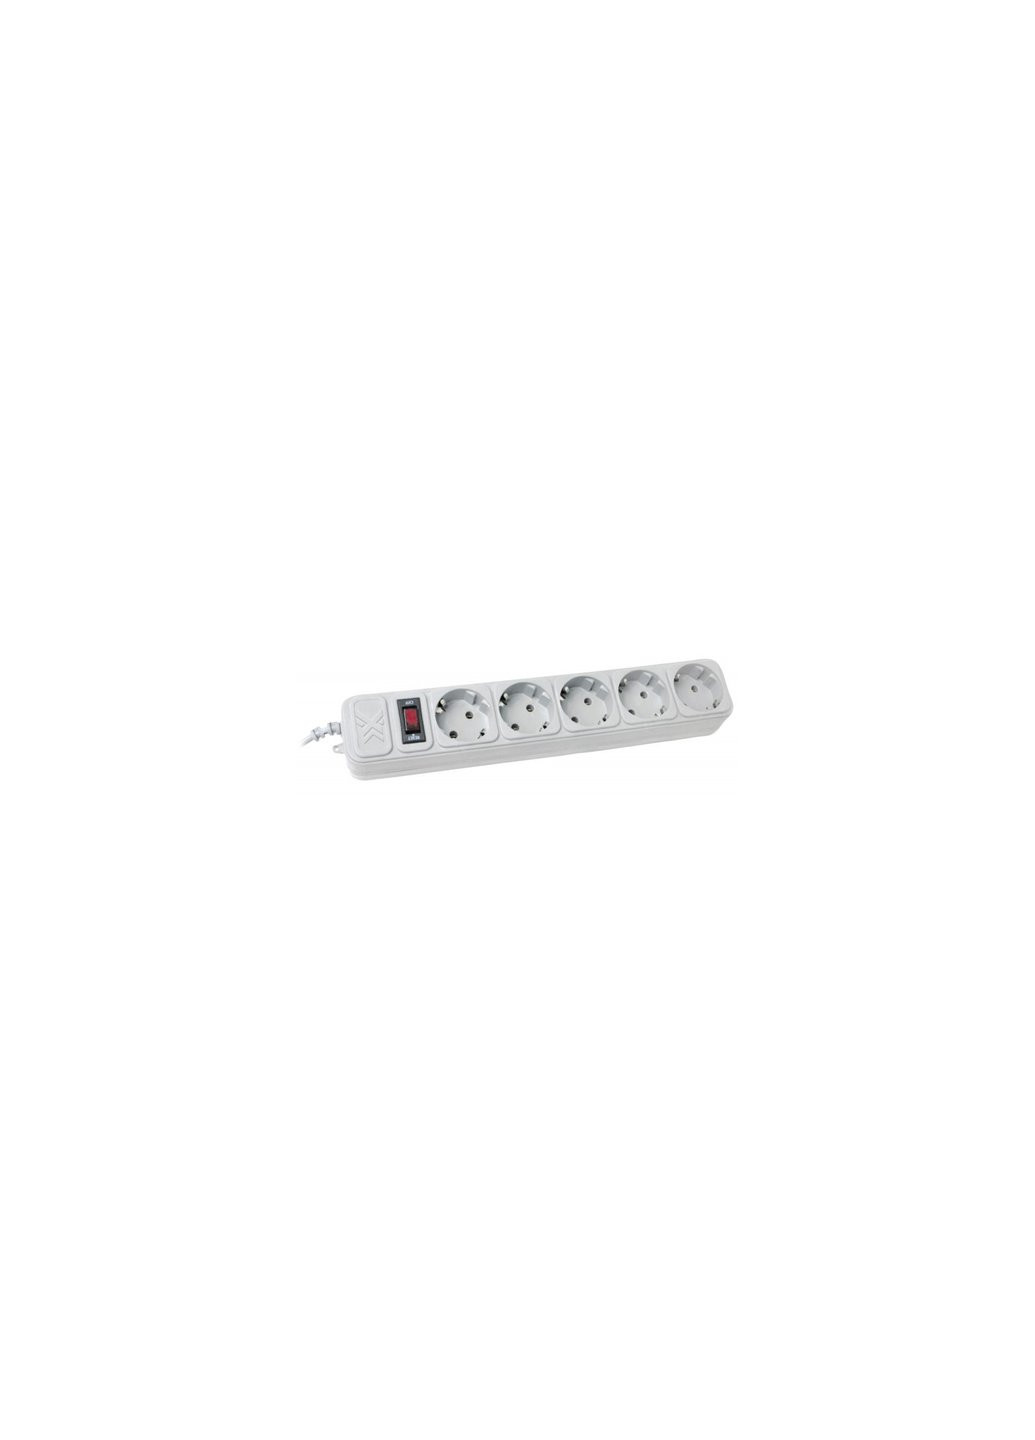 Сетевой фильтр питания SPM5-G-6G серый 1,8 м кабель, 5 розеток (SPM5-G-6G) Maxxter (257223376)